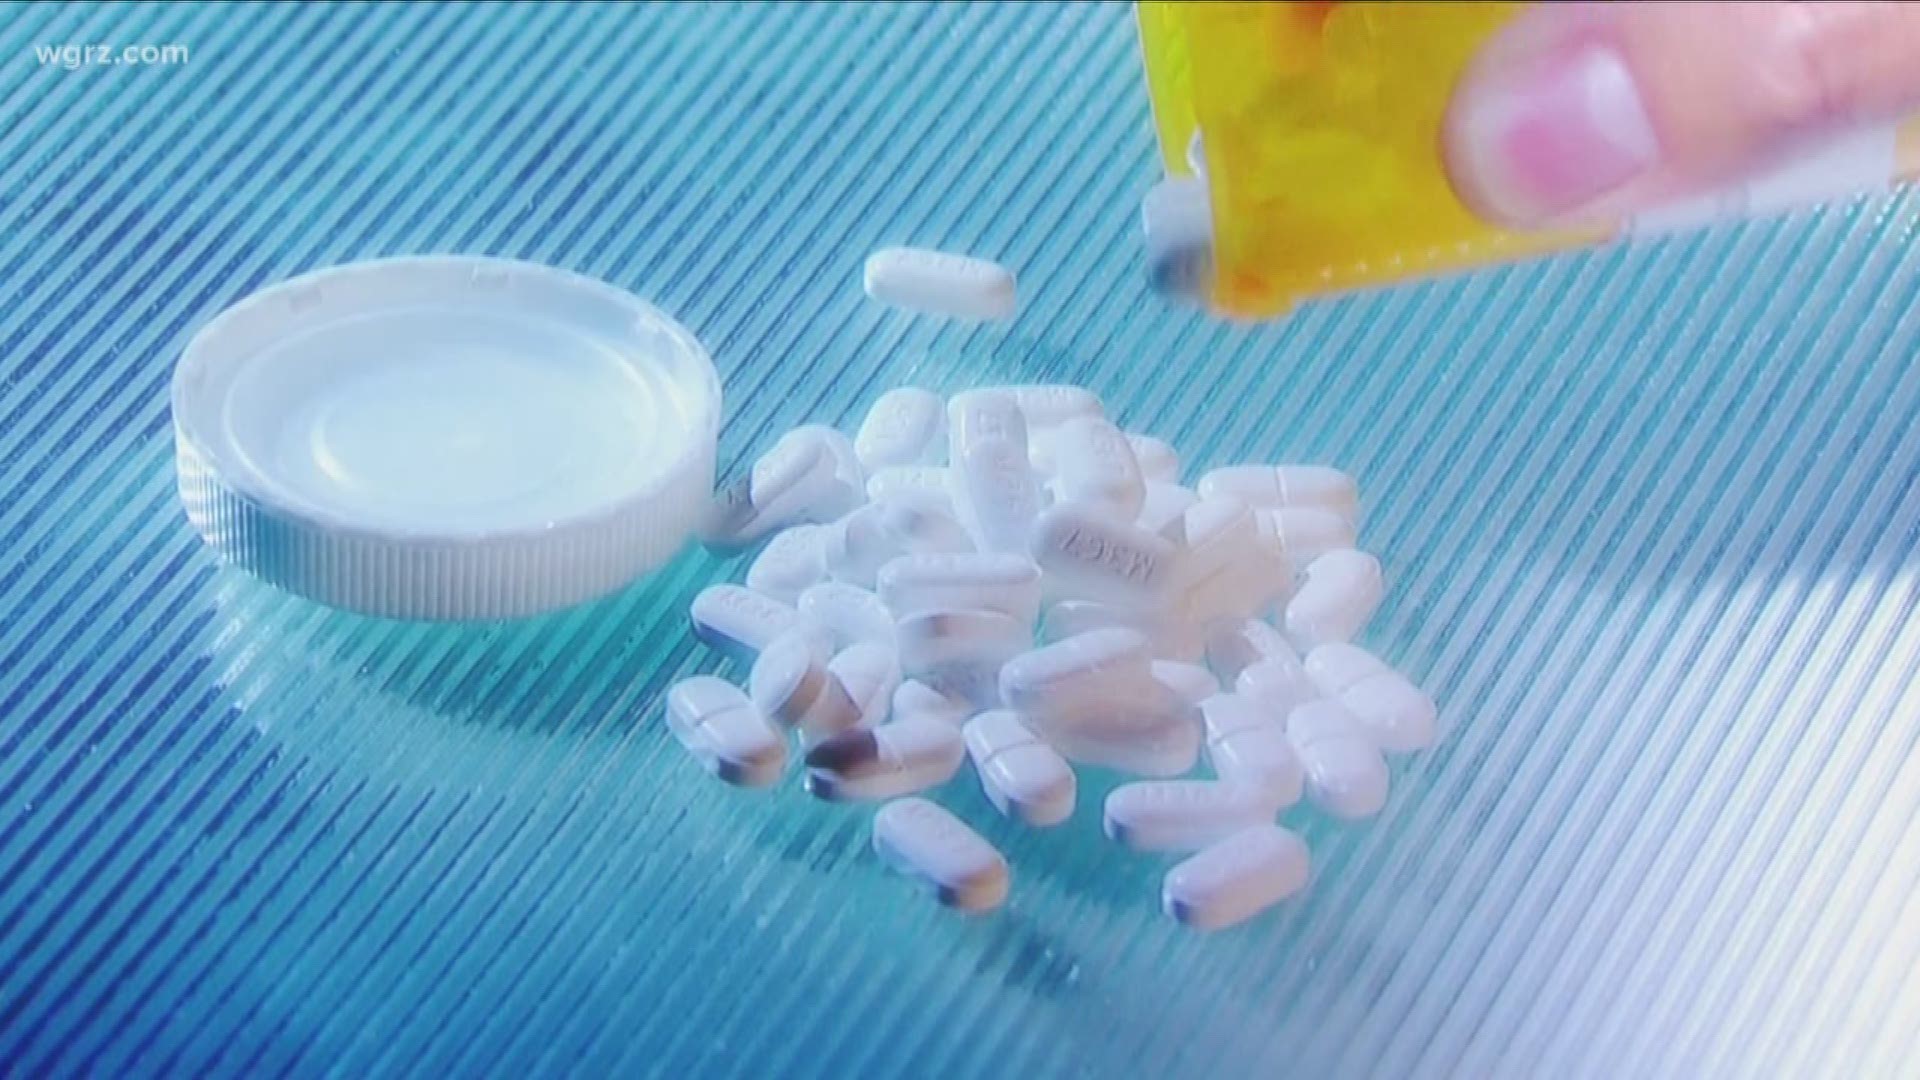 NYS To Start New Drug Take-Back Program